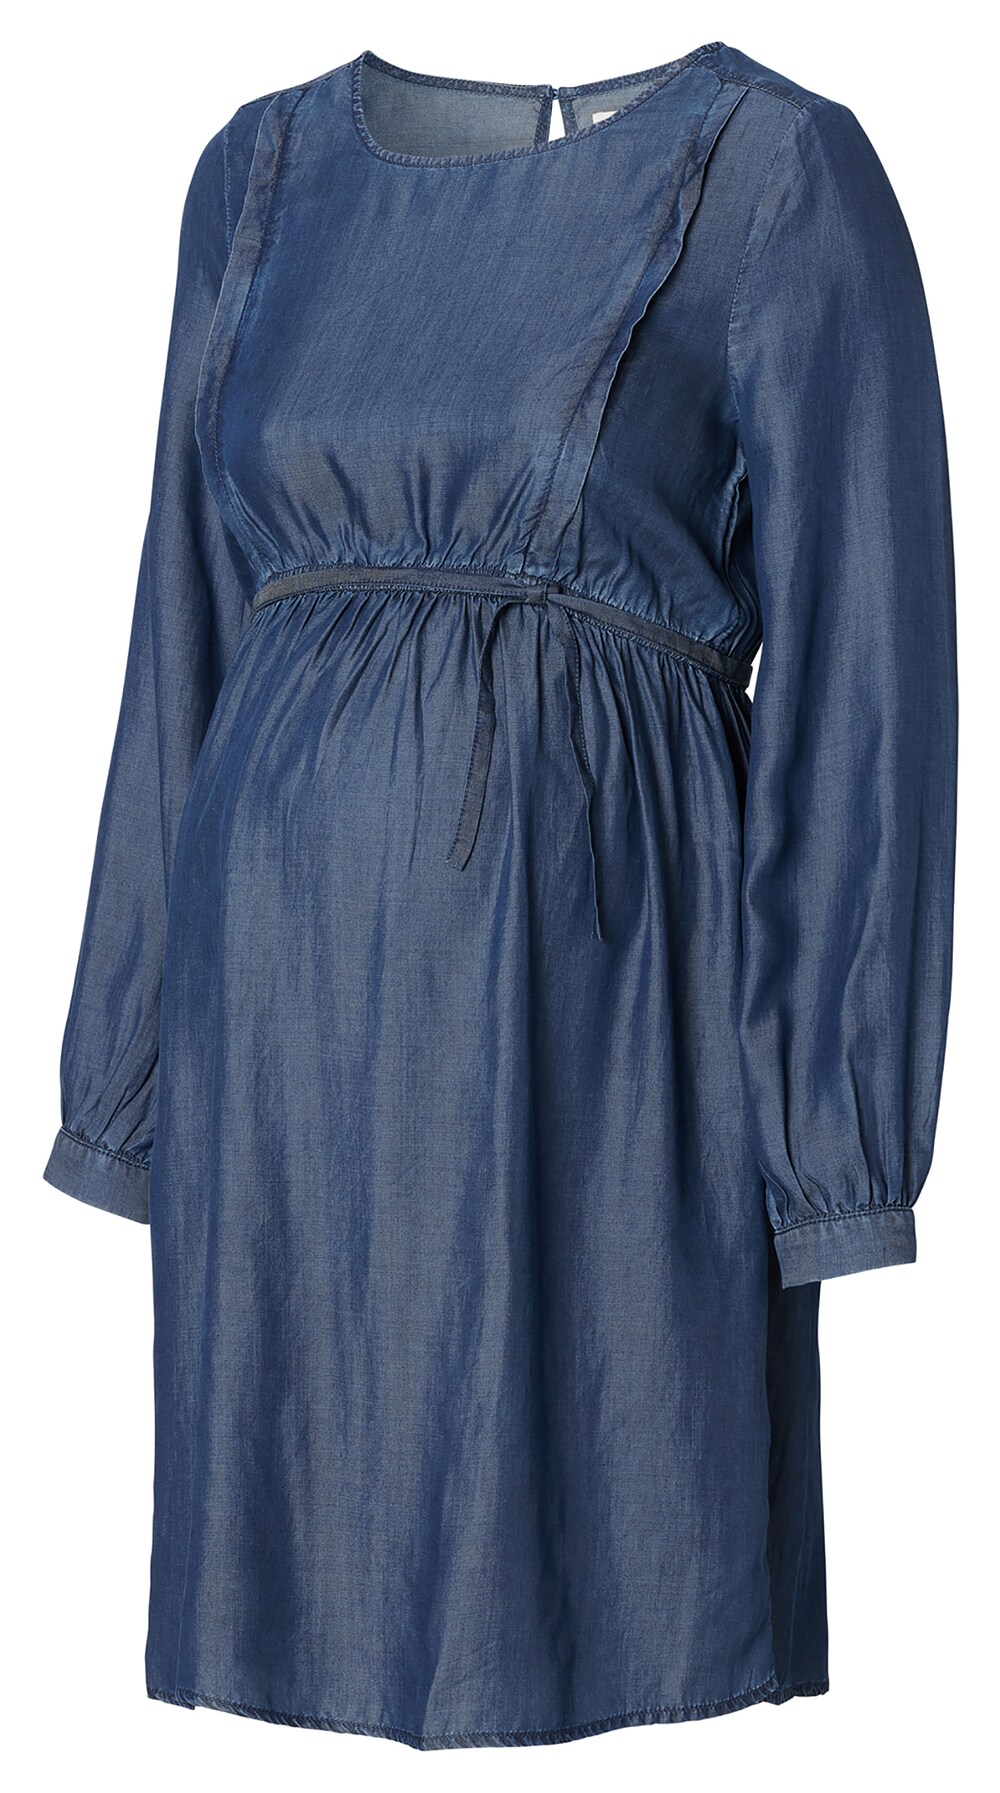 Платье Esprit Maternity, синий рубашка платье esprit maternity синий